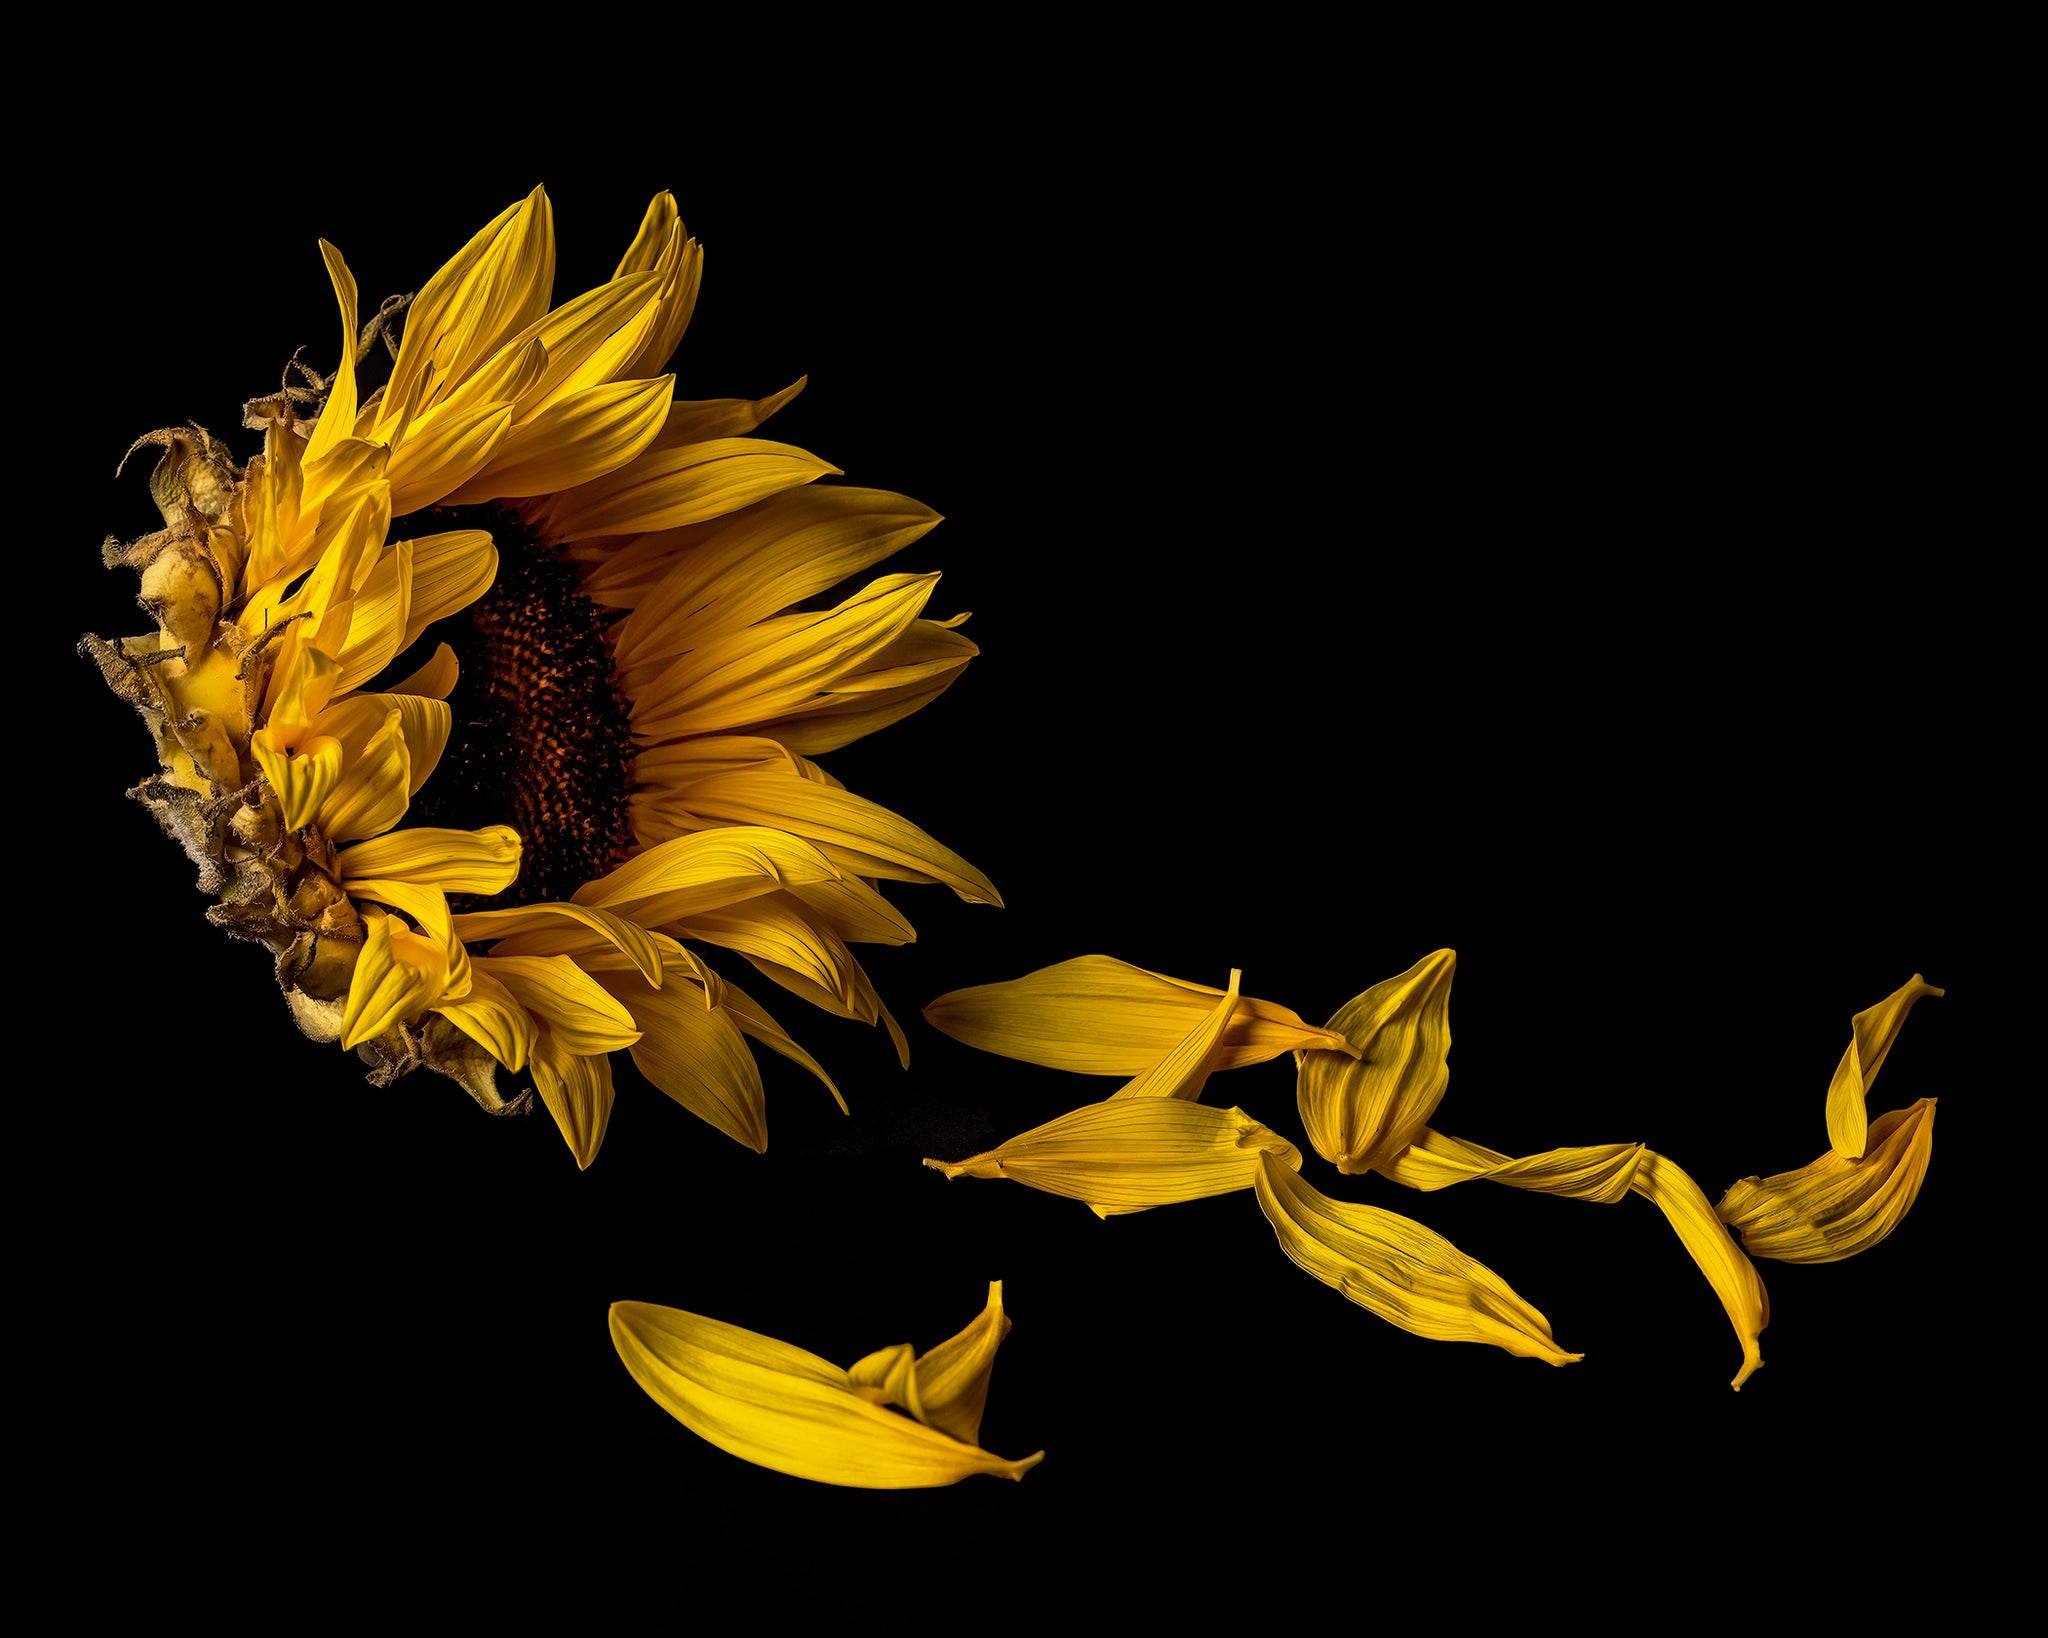 Submerged Series: Sunflower in Decline